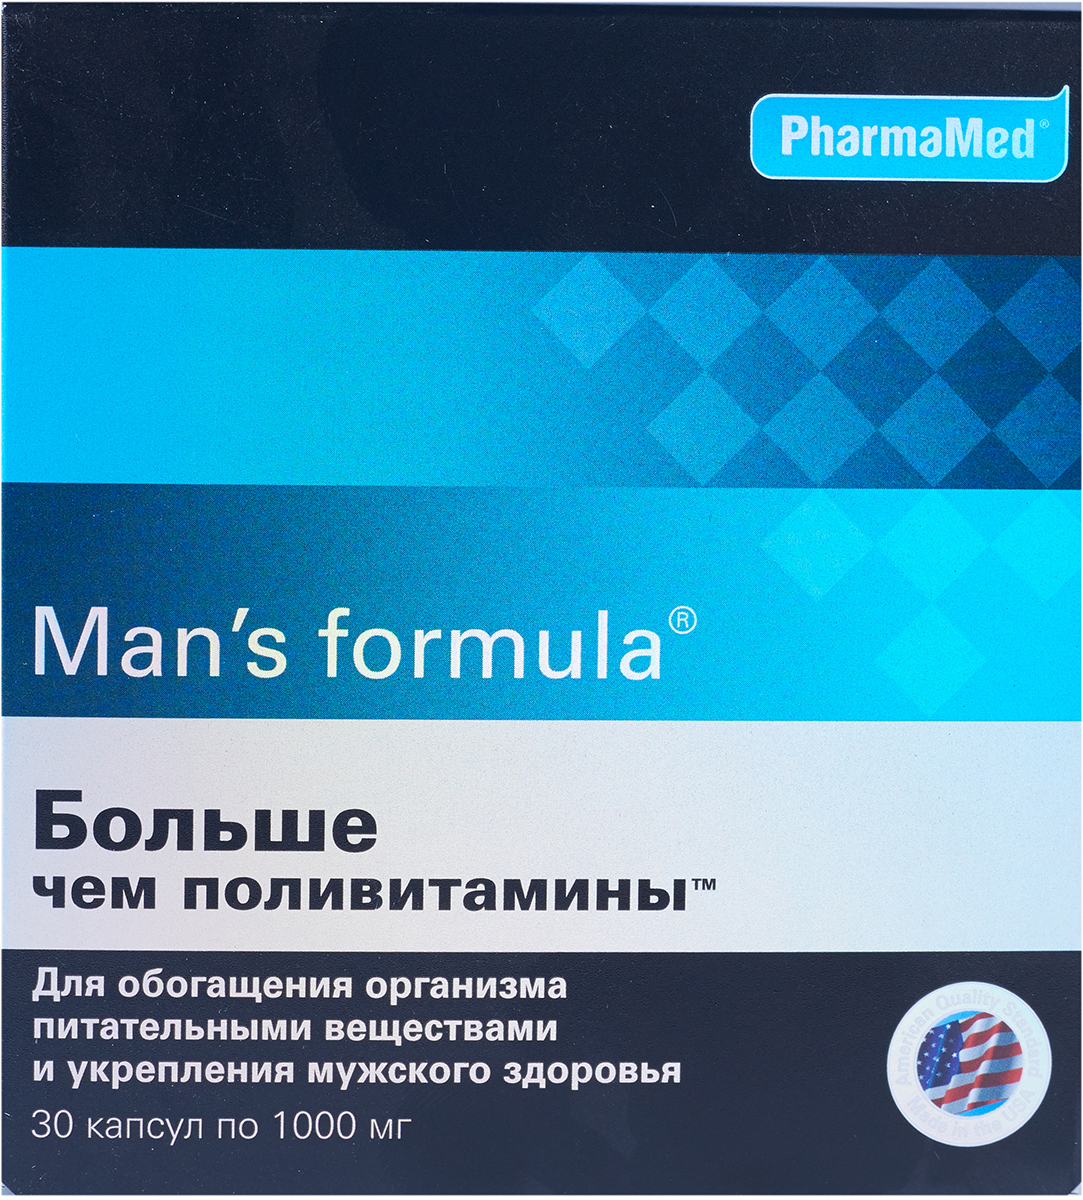 Менс формула больше чем поливитамины для мужчин. PHARMAMED man's Formula. Витамины Менс формула. Витамины Менс формула для мужчин. Менс формула больше поливитамины.